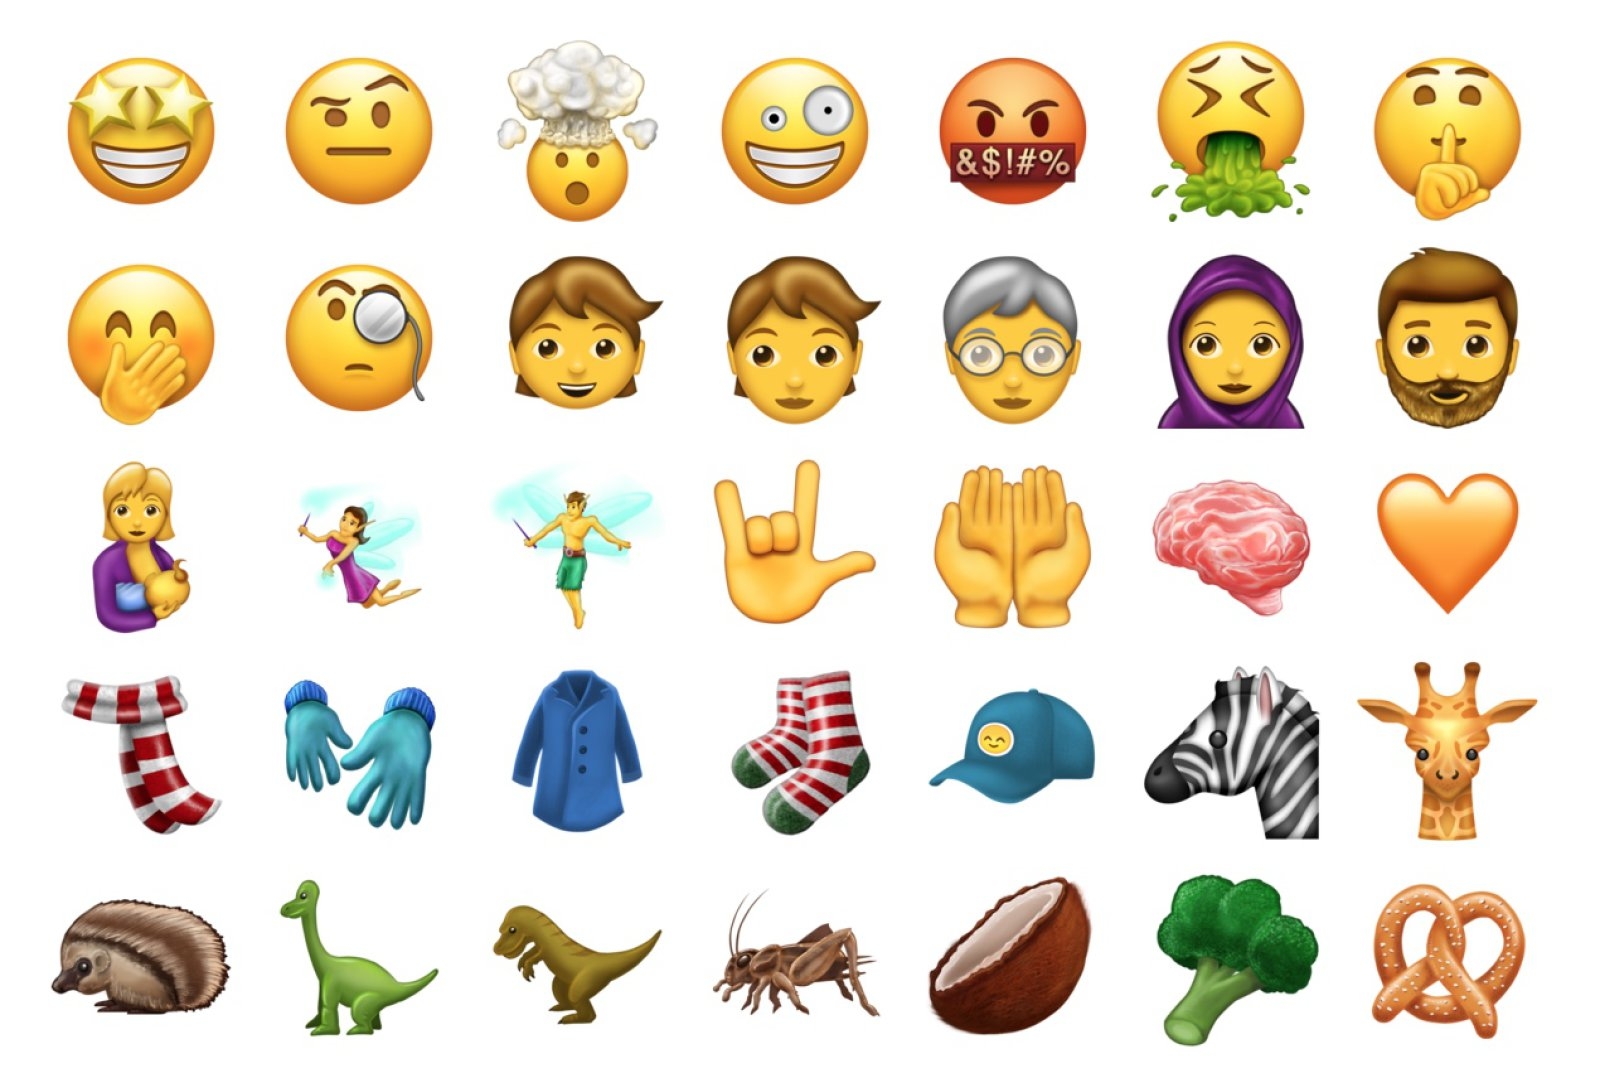 Los nuevos emojis para distintas plataformas.